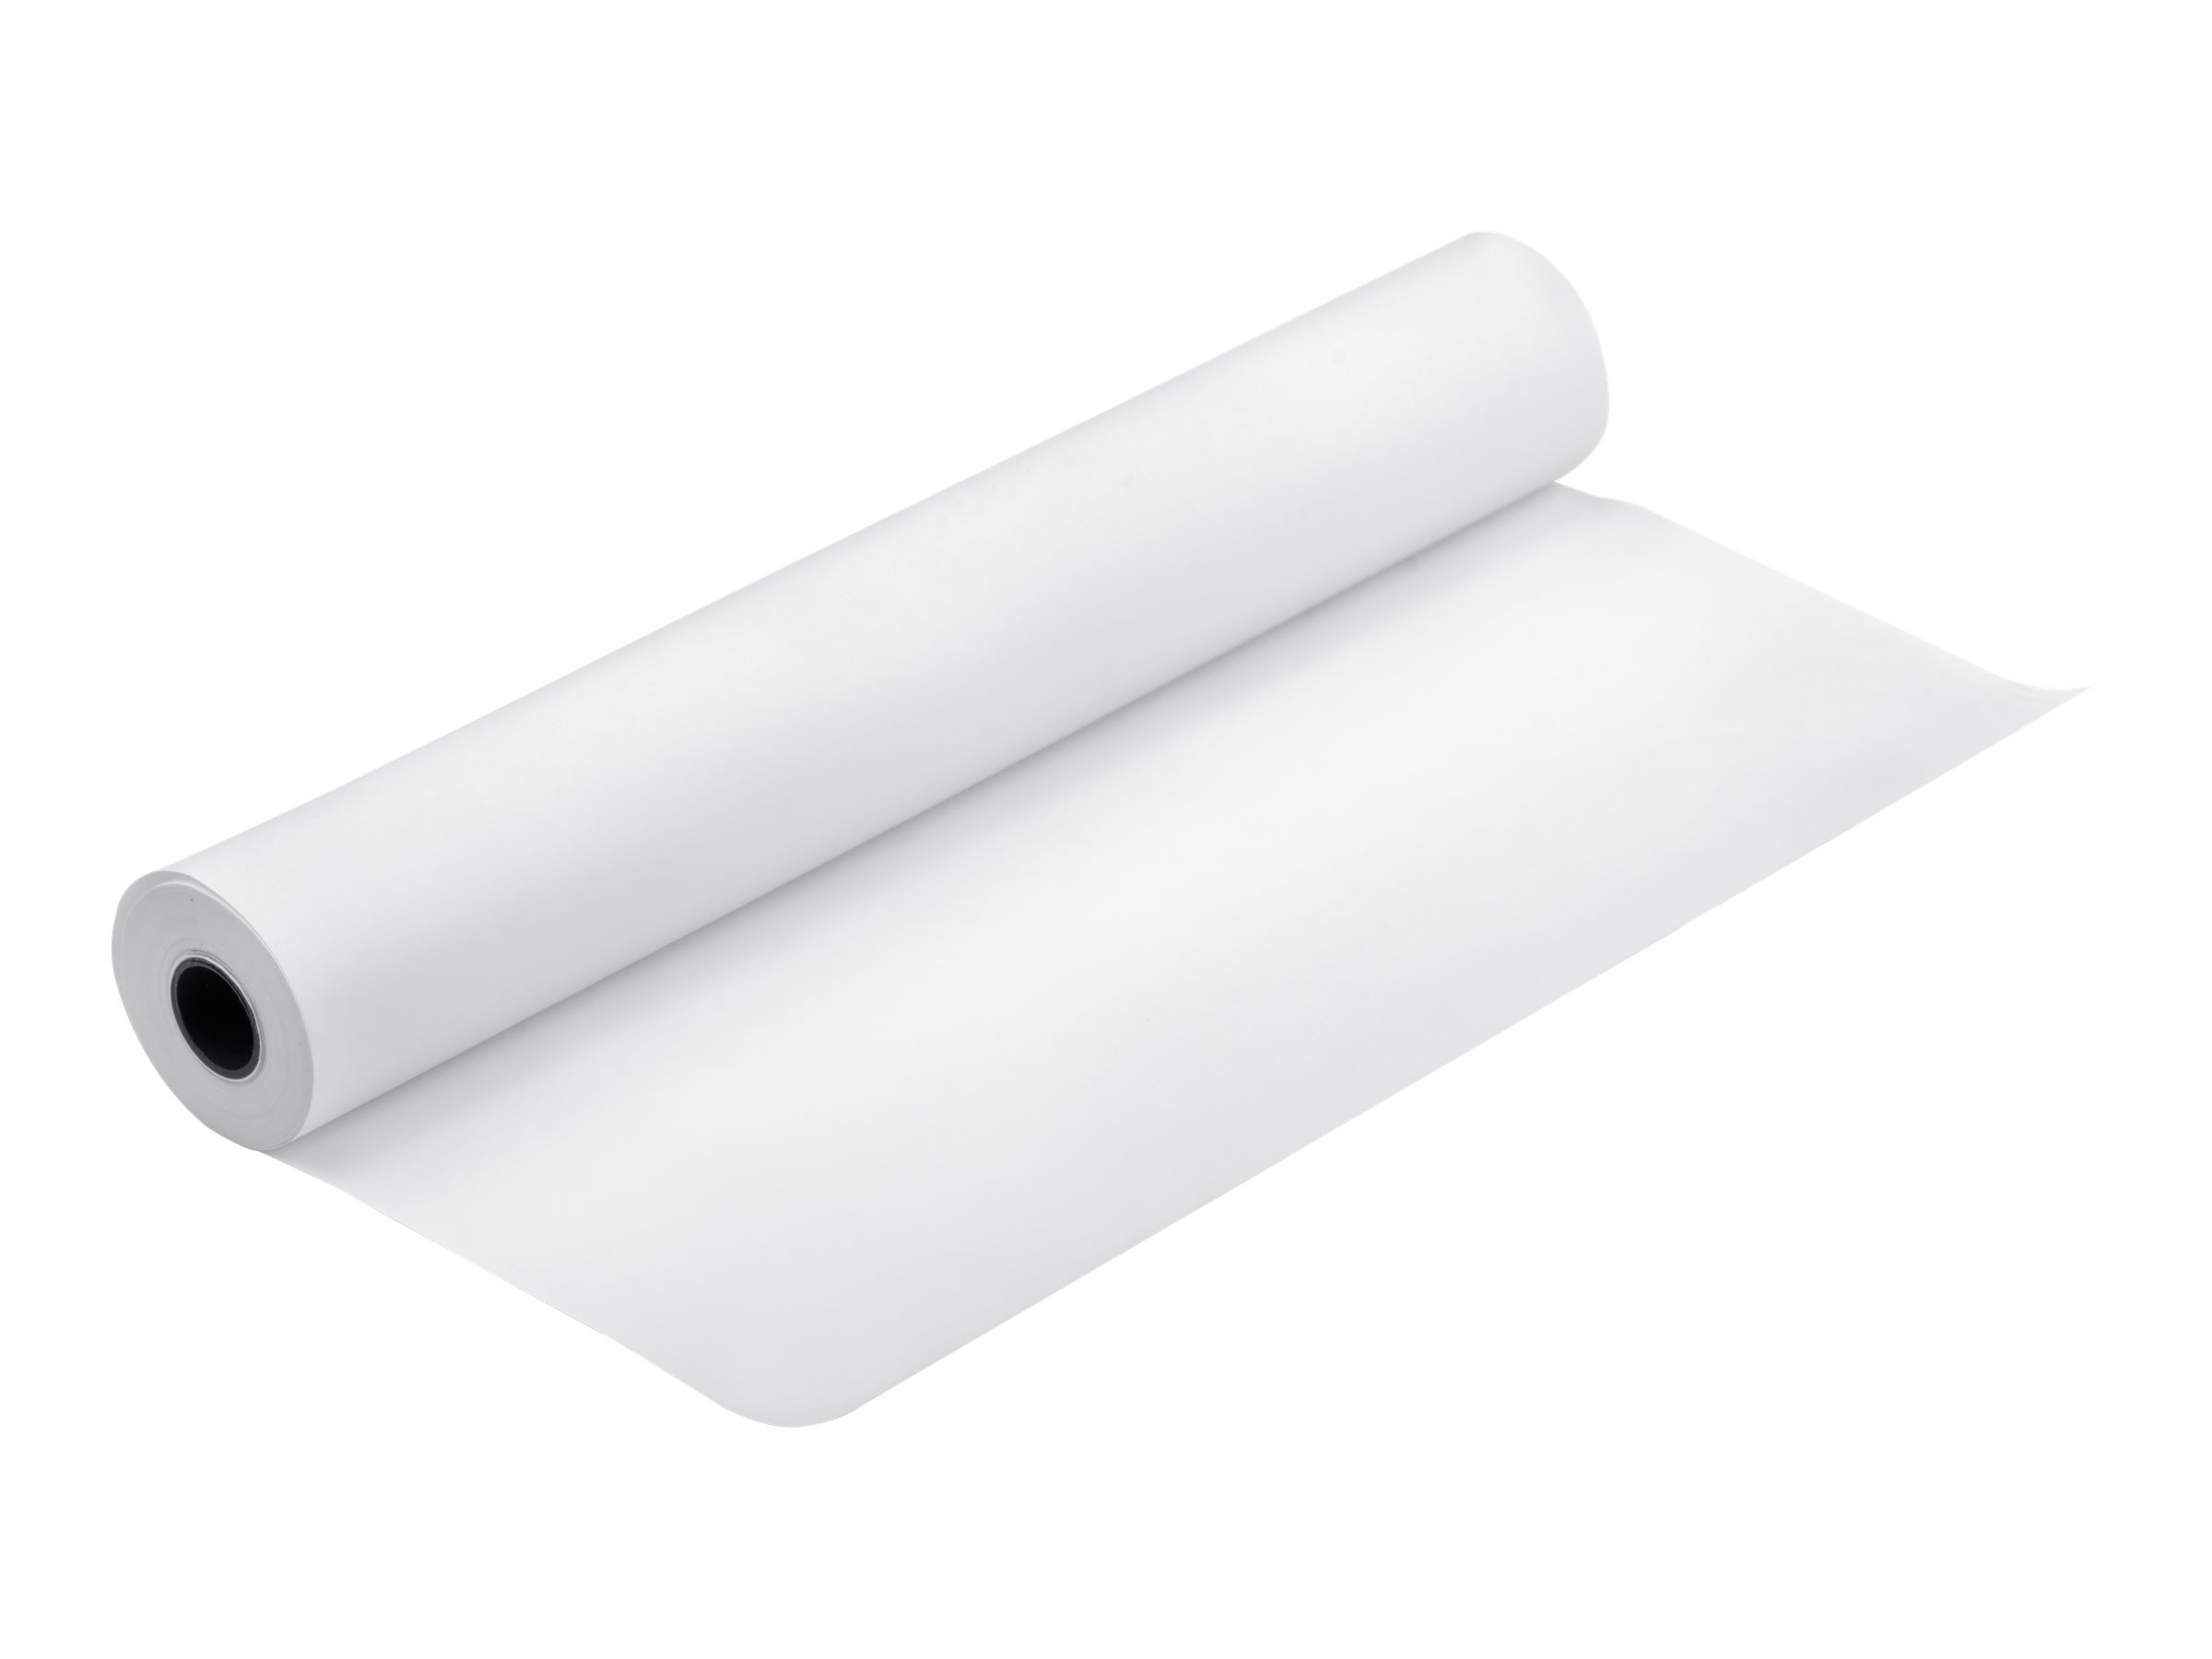 Epson Singleweight Matte - Mat - rouleau (43,2 cm x 40 m) - 120 g/m² - papier - pour SureColor P5000, SC-P5000, P7500, P9500, T2100, T3100, T3400, T3405, T5100, T5400, T5405 - C13S041746 - Rouleaux de papier